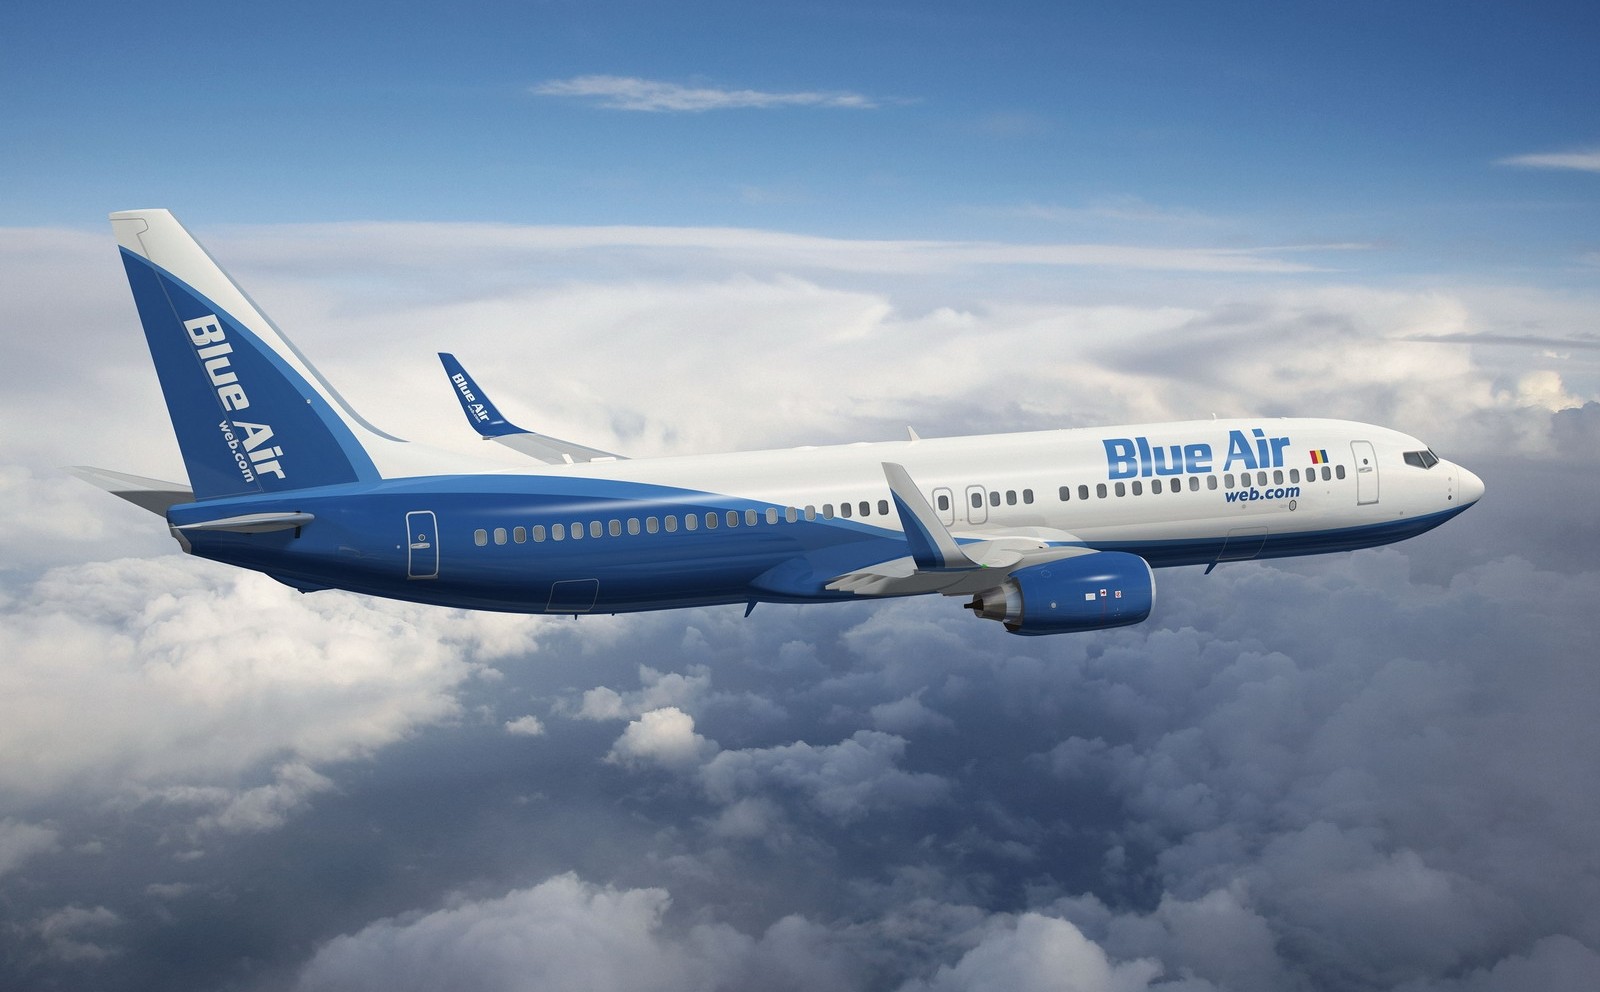 Blue Air reduce zborurile pentru ianuarie - februarie 2022. Peste 50 de destinații noi vor fi lansate în Vara 2022